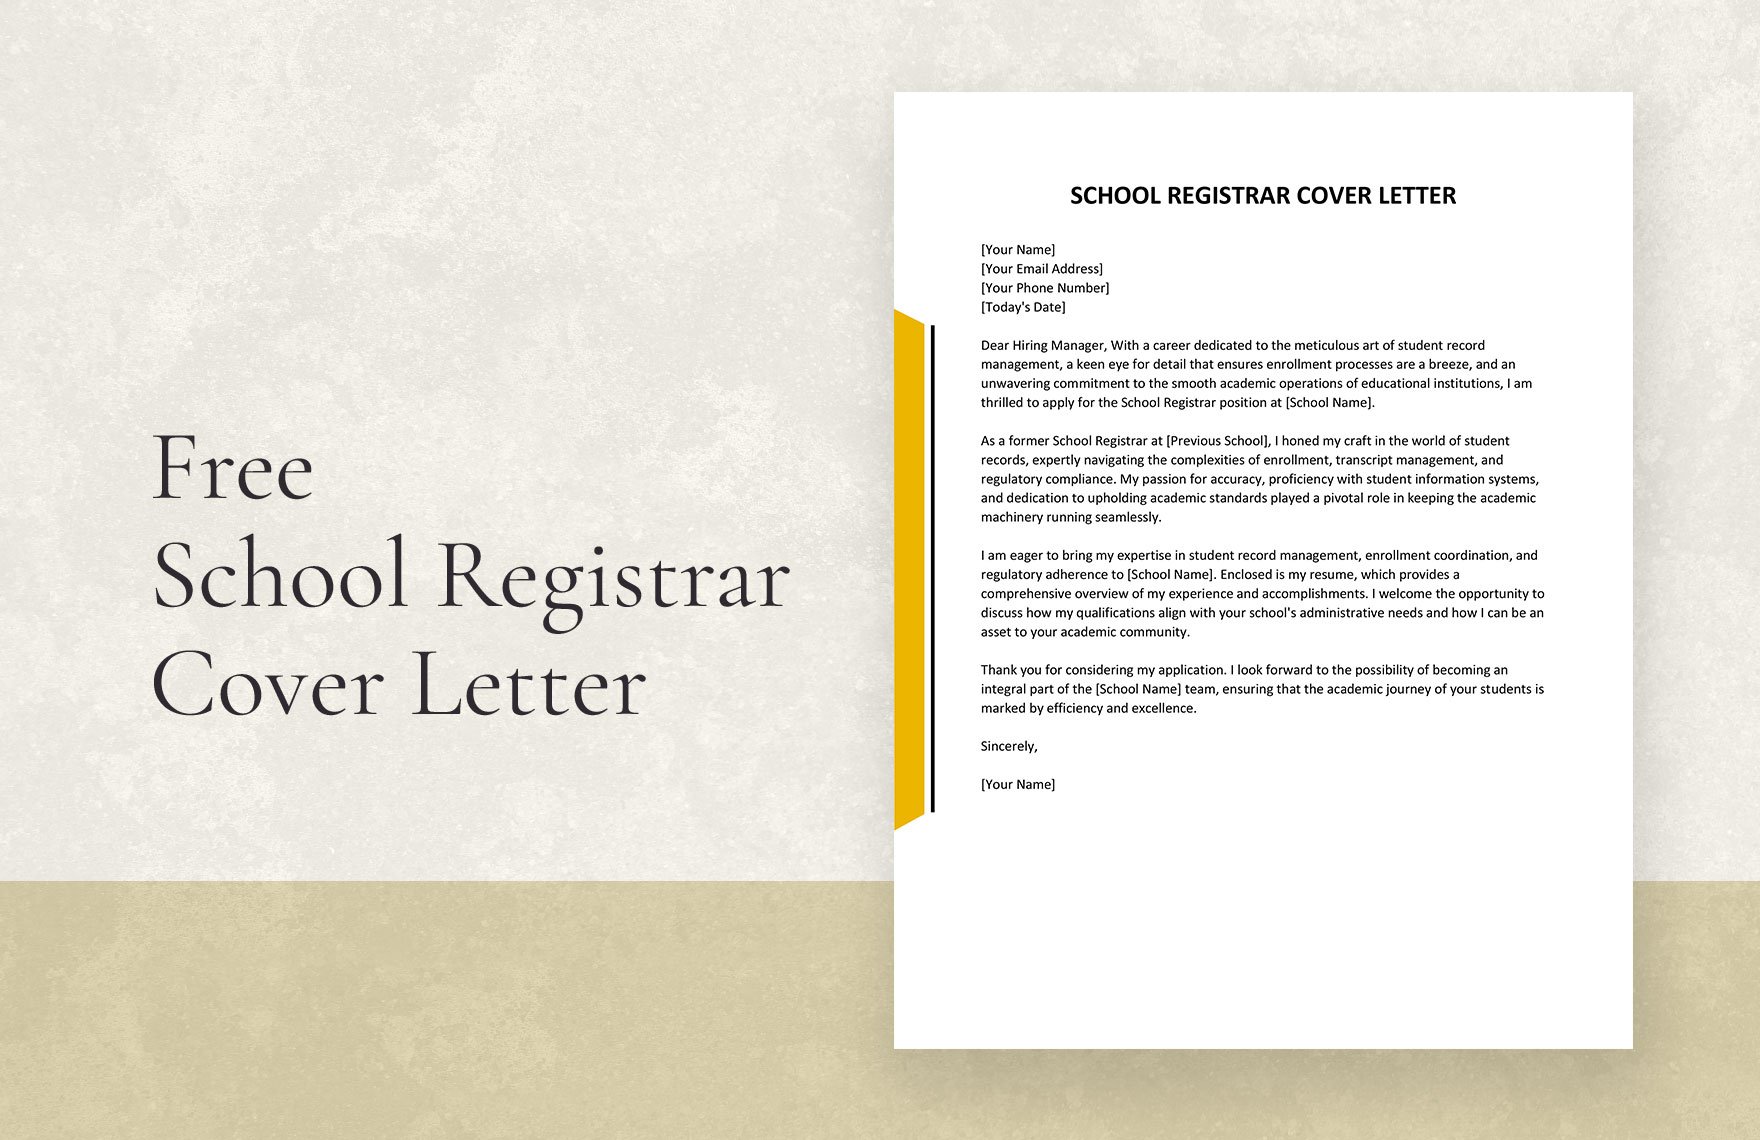 School Registrar Cover Letter